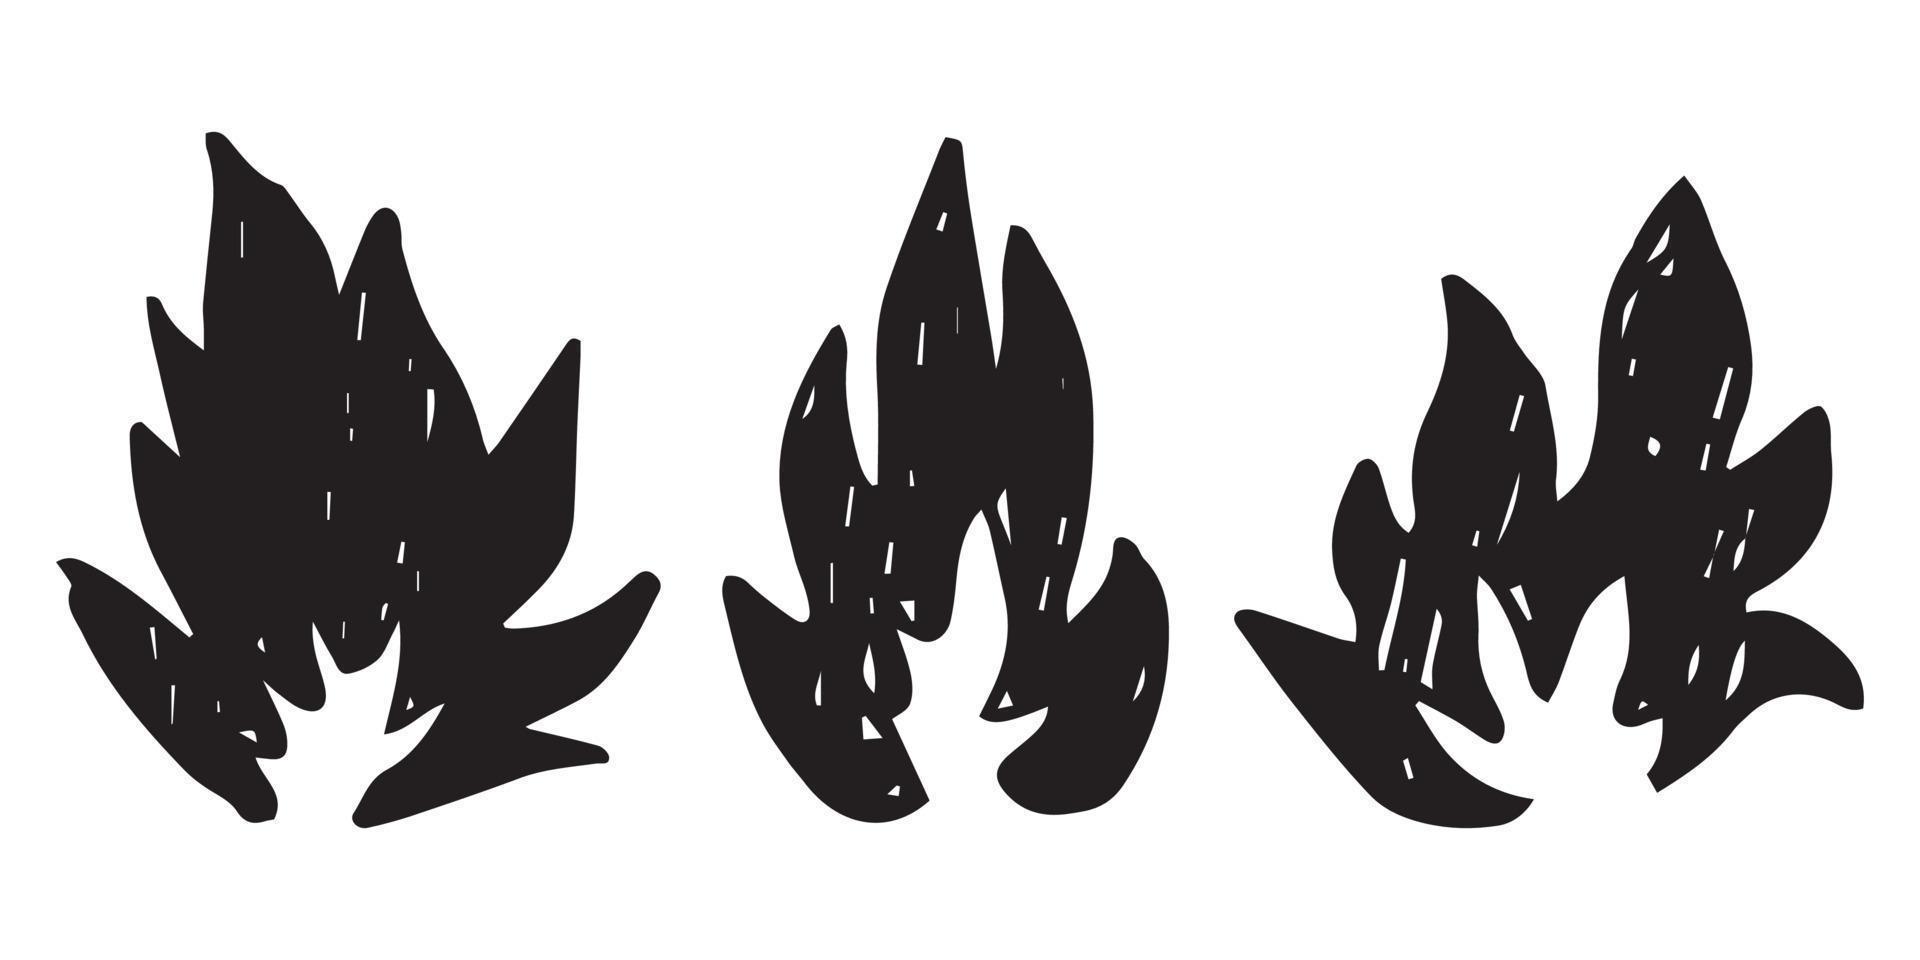 ícones de fogo desenhados à mão. conjunto de vetores de ícones de chamas de fogo. fogo de esboço de doodle desenhado à mão, desenho preto e branco. símbolo de fogo simples.